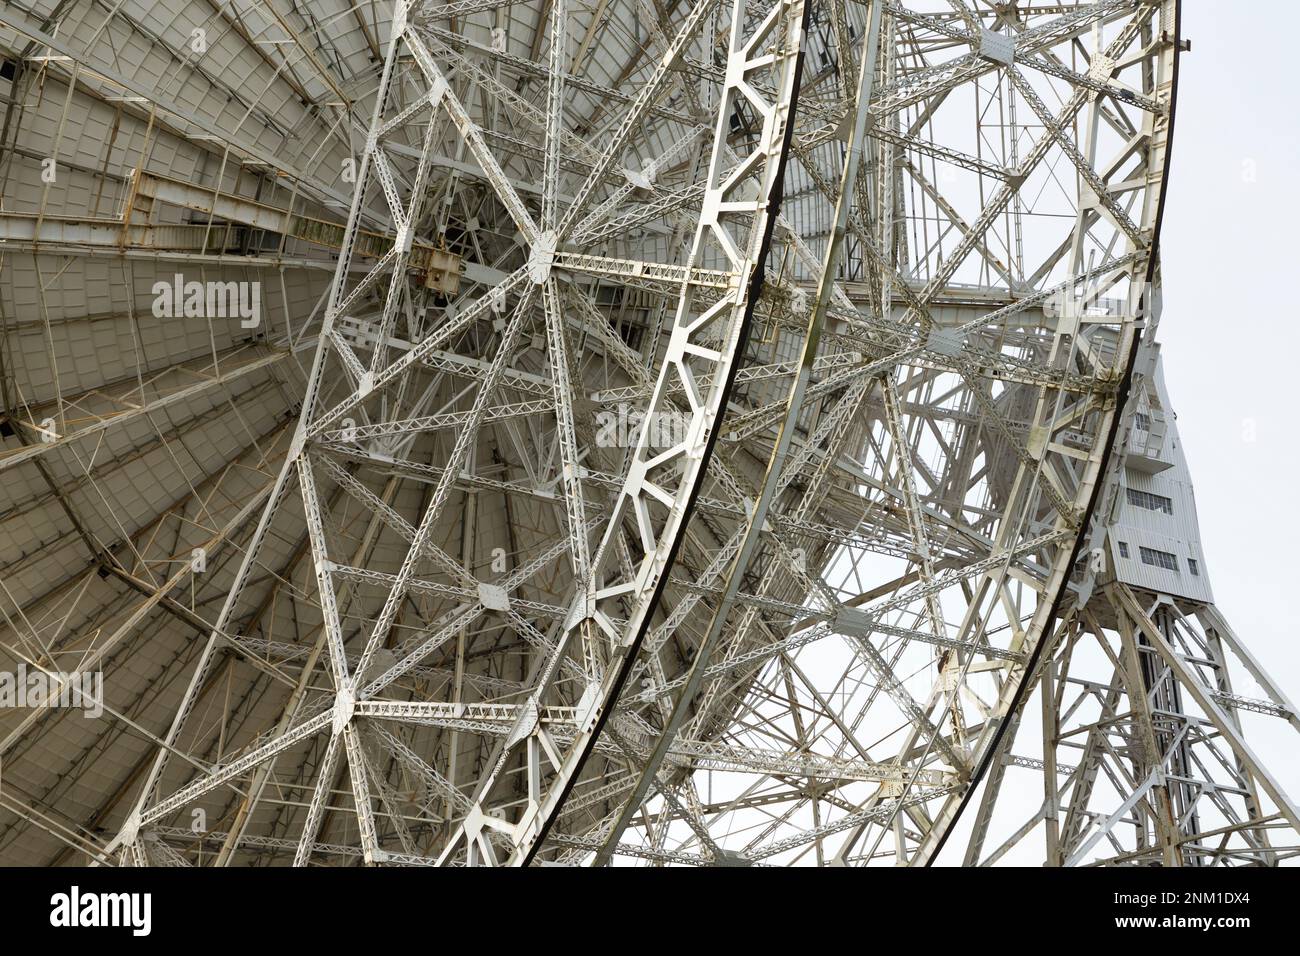 Le radiotélescope géant Lovell sur le site de Jodrell Bank, Cheshire, Royaume-Uni. Le cadre qui soutient la parabole est clairement visible de l'arrière / de l'arrière / du côté. (133) Banque D'Images